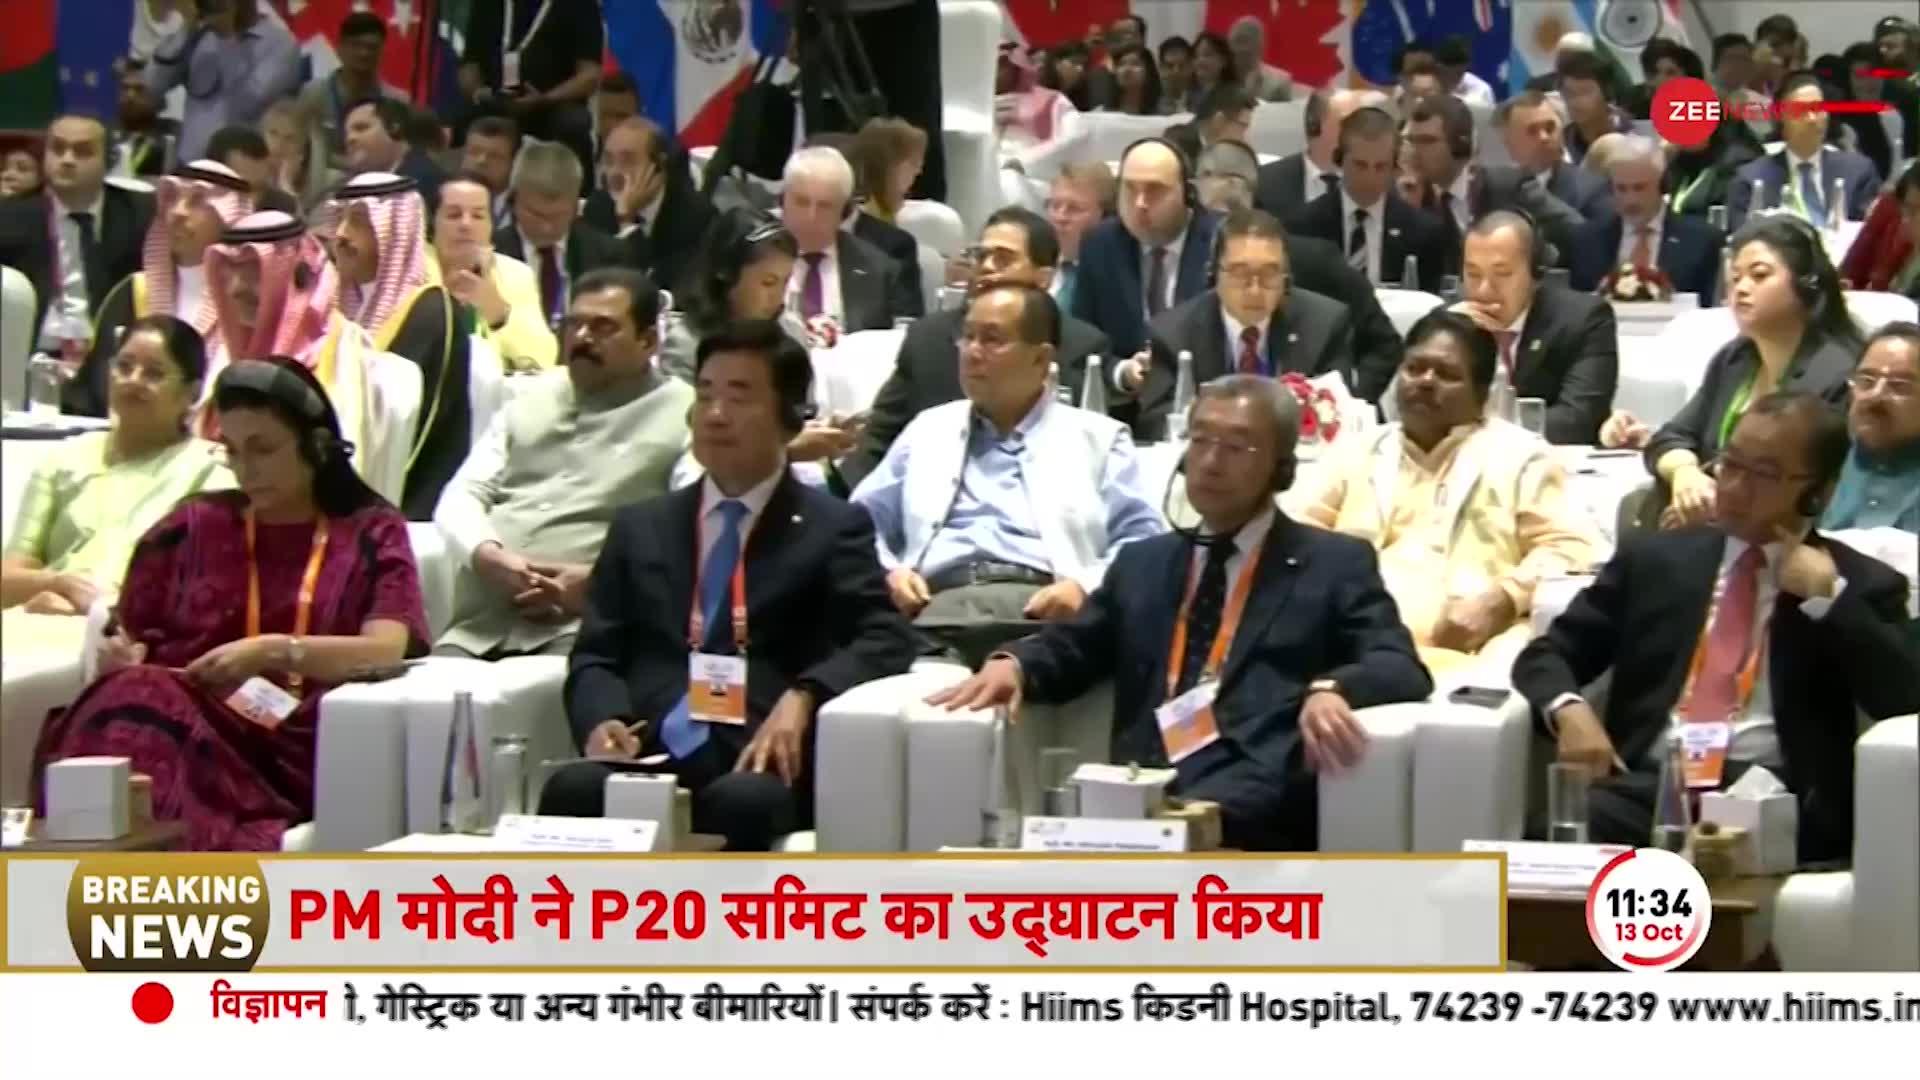 PM Modi P20 Summit Speech: दिल्ली में पी-20 सम्मेलन के उद्घाटन के बाद पीएम मोदी ने कह दी बड़ी बात